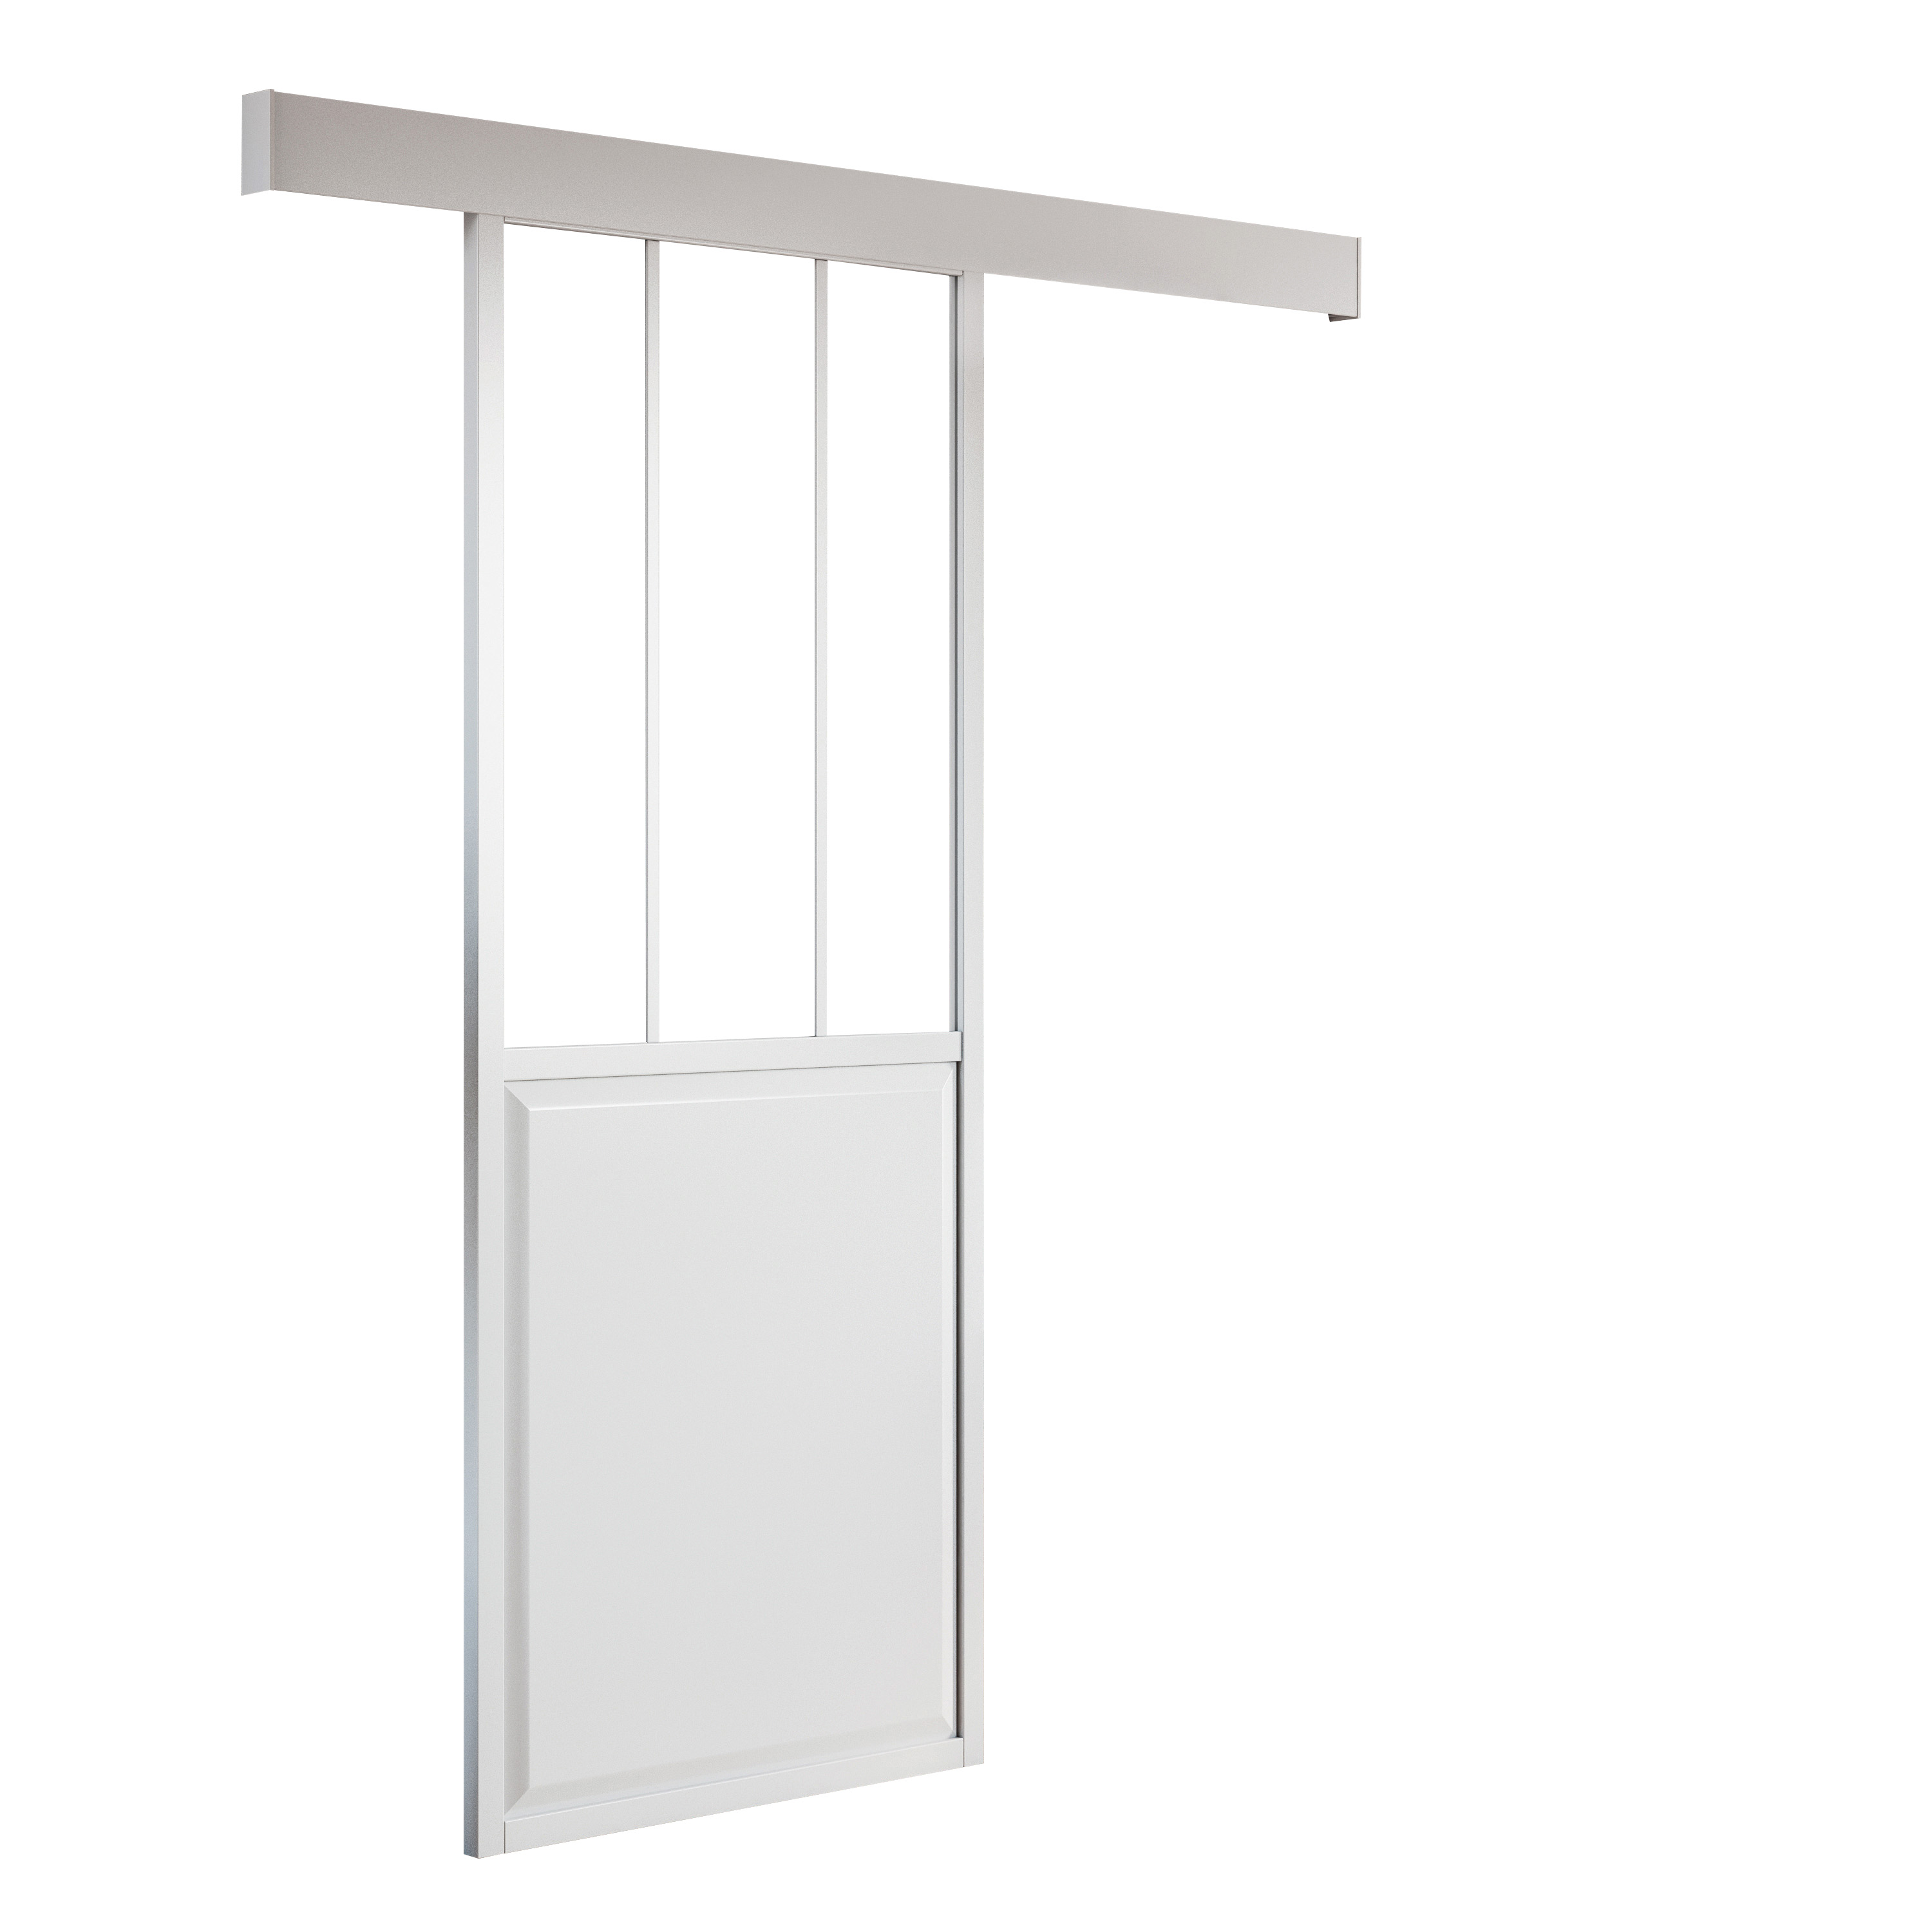 Anta per porta scorrevole ARTENS Atelier in alluminio bianco 86 x 215 cm reversibile - 1